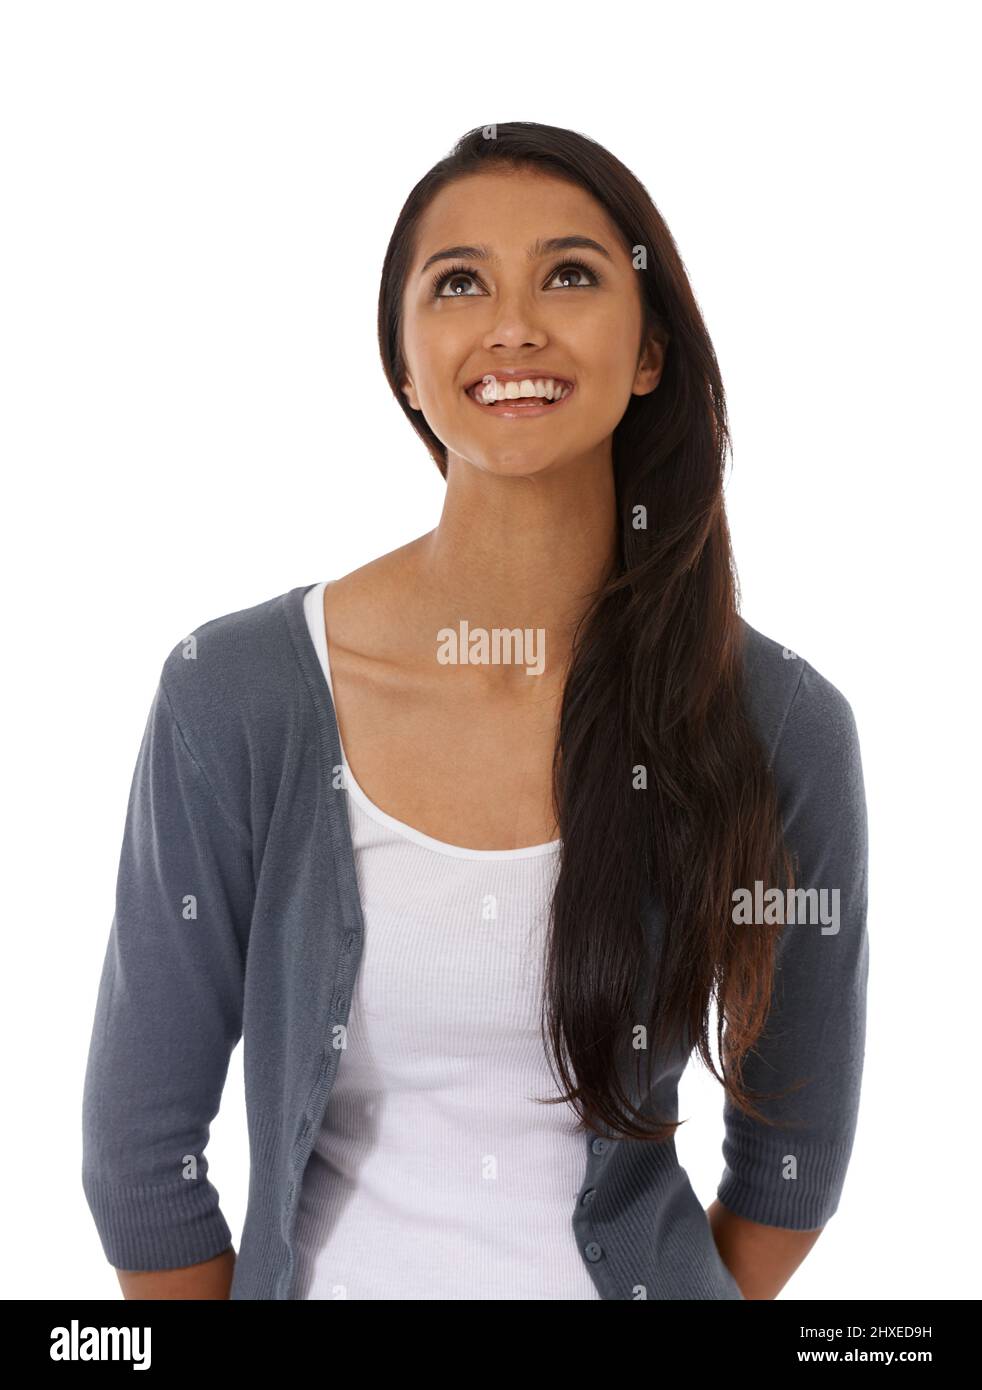 Offene Heiterkeit. Eine schöne junge ethnische Frau, die vor einem weißen Hintergrund lächelt. Stockfoto